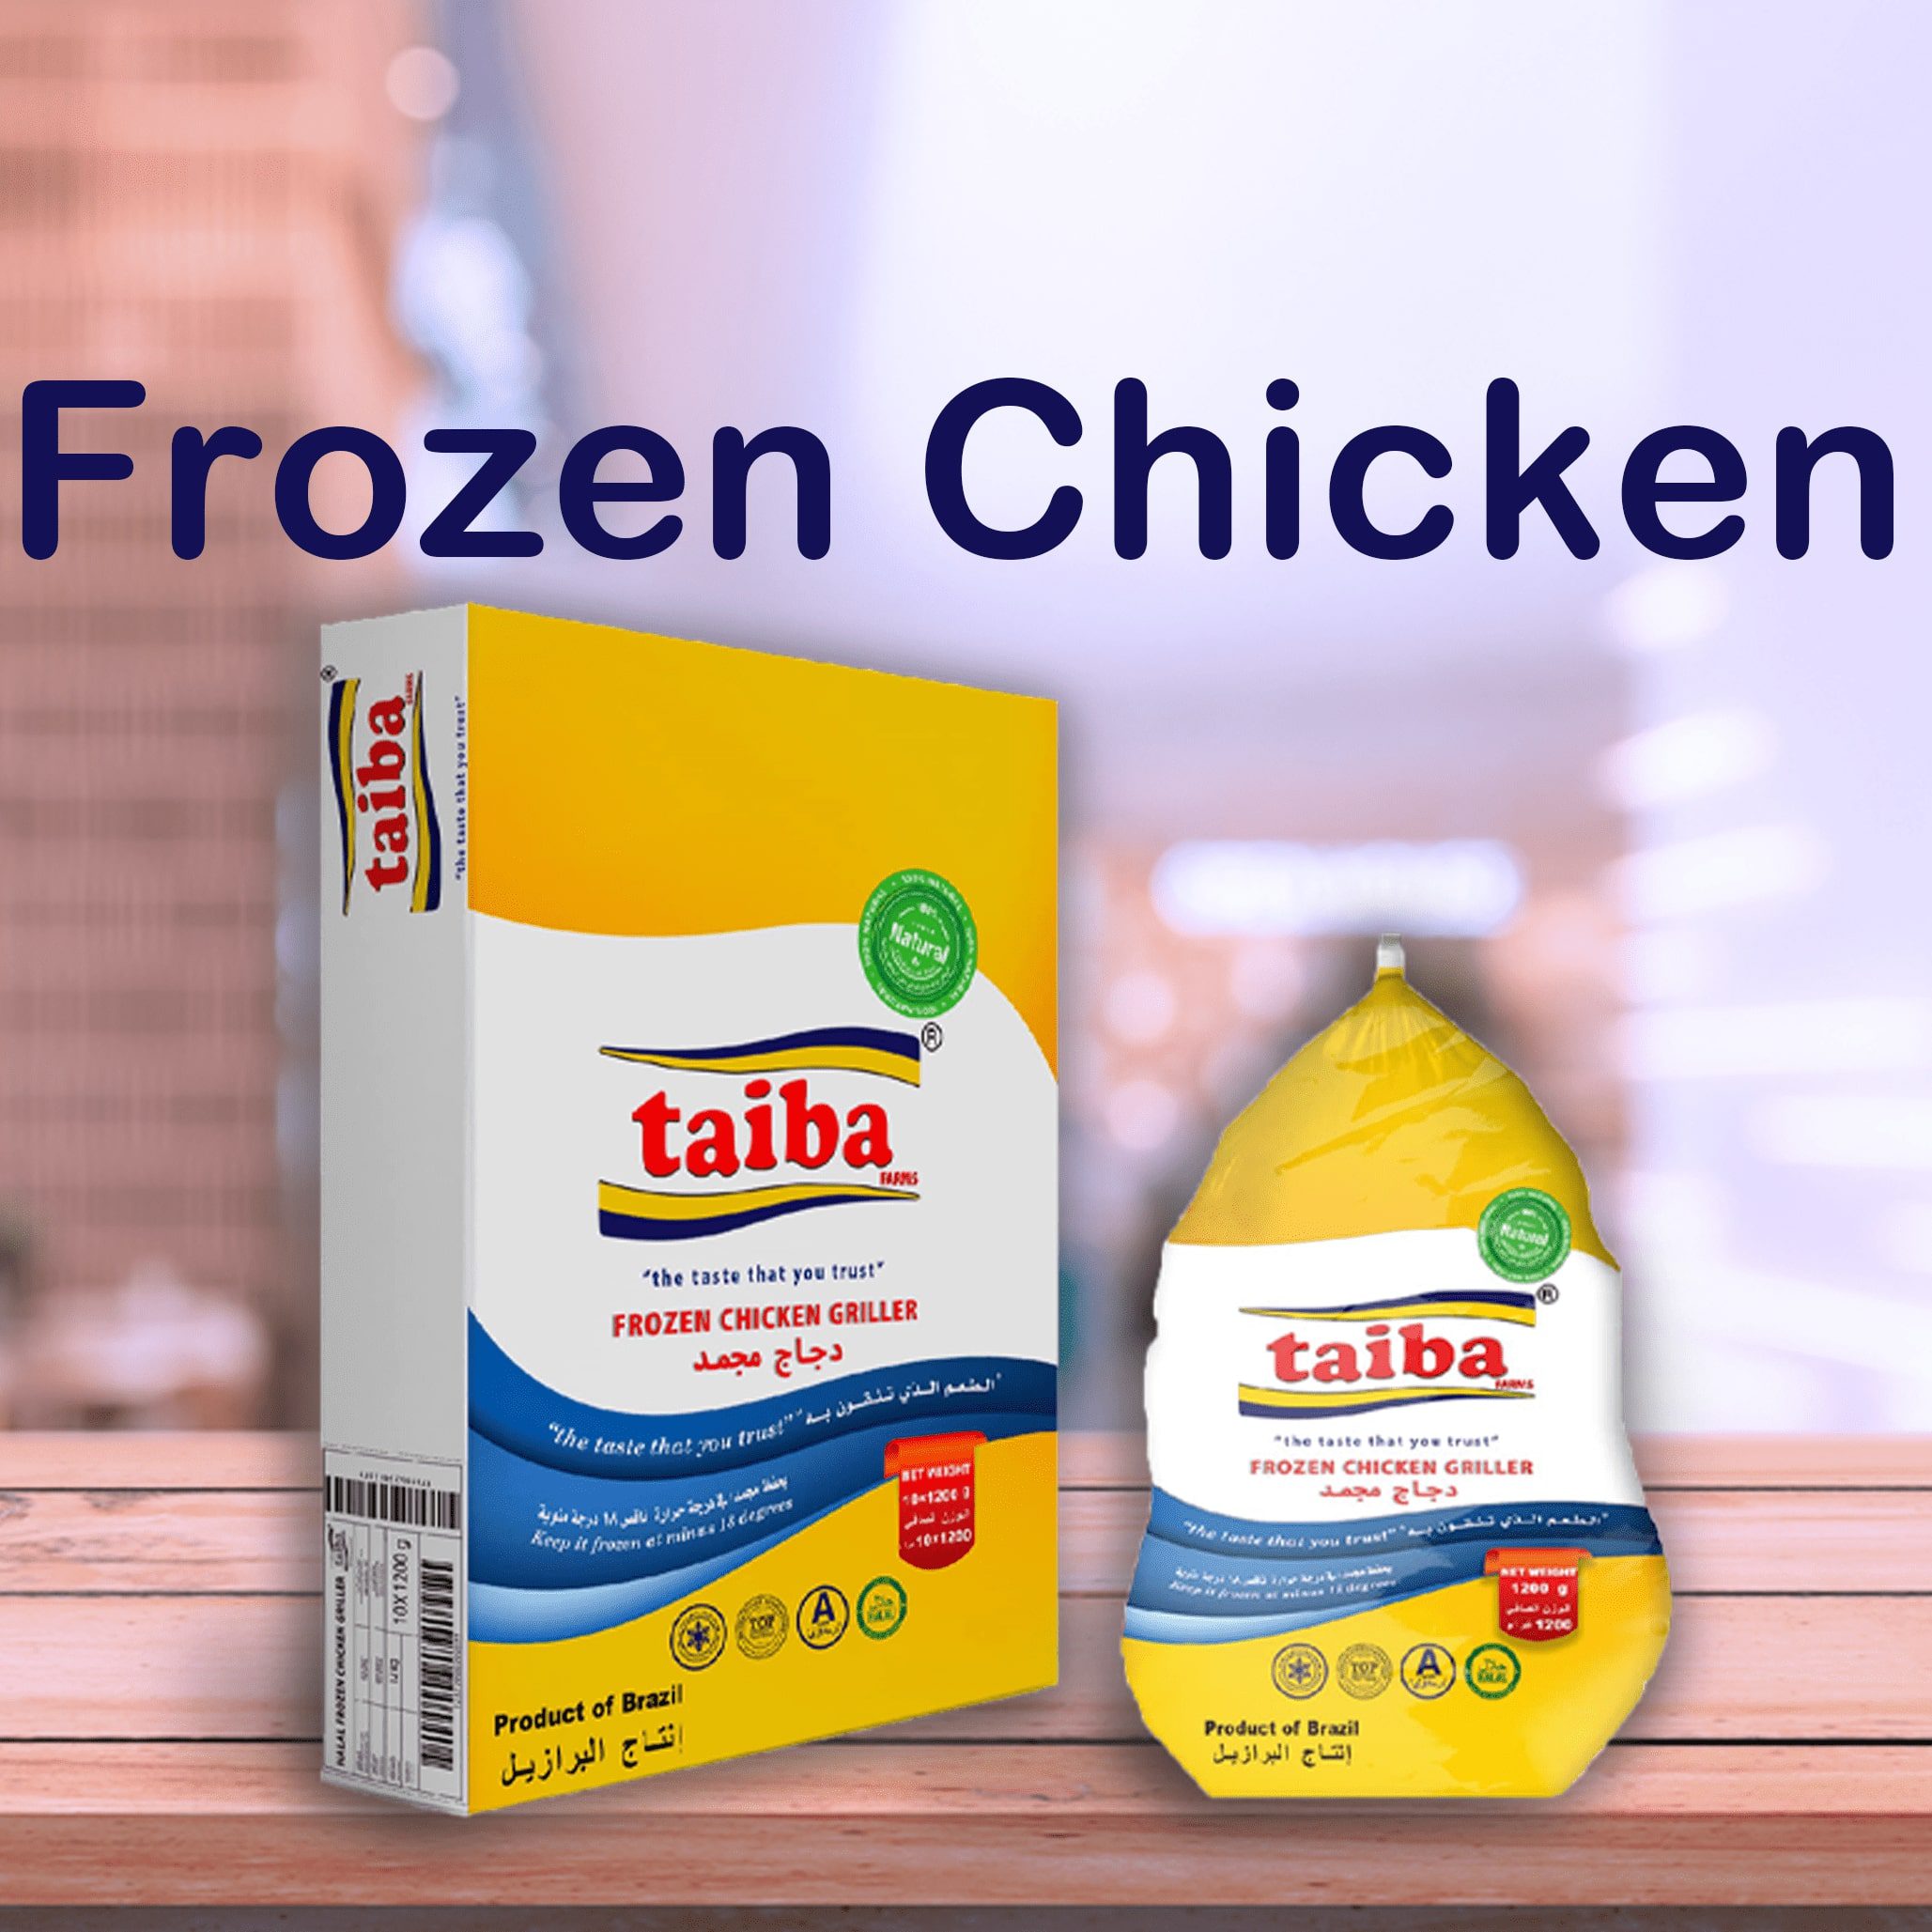 buy-frozen-chicken-online-in-uae-import-frozen-chicken-export-frozen-chicken-frozen-chicken-delivery-in-uae-dubai-sharjah-alain-abu-dhabi